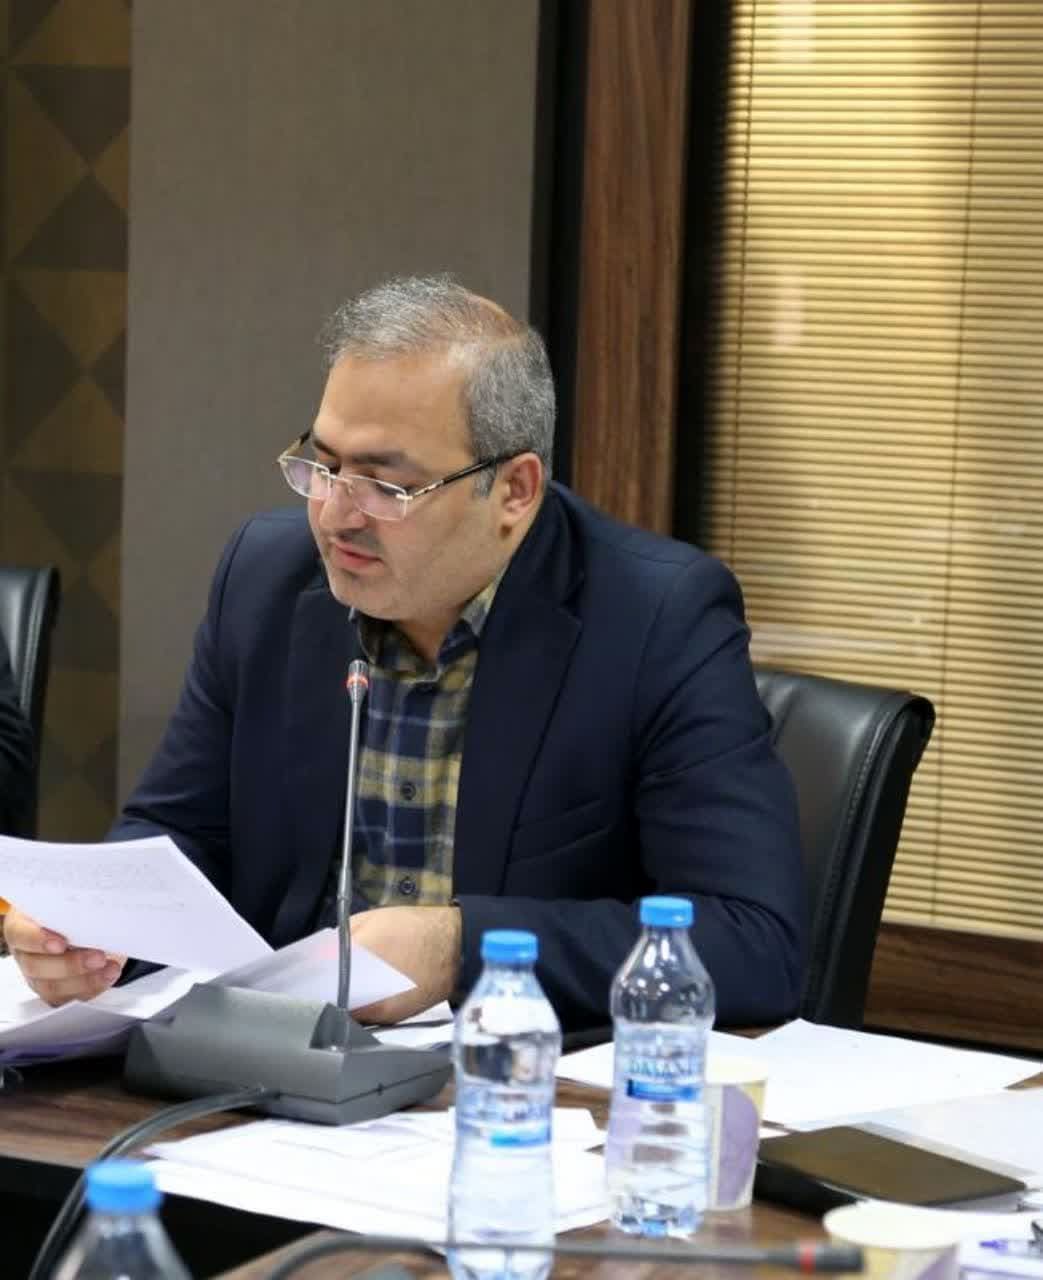 طرح تفصیلی شهر بوئین زهرا در کمیسیون ماده 5 به تصویب رسید